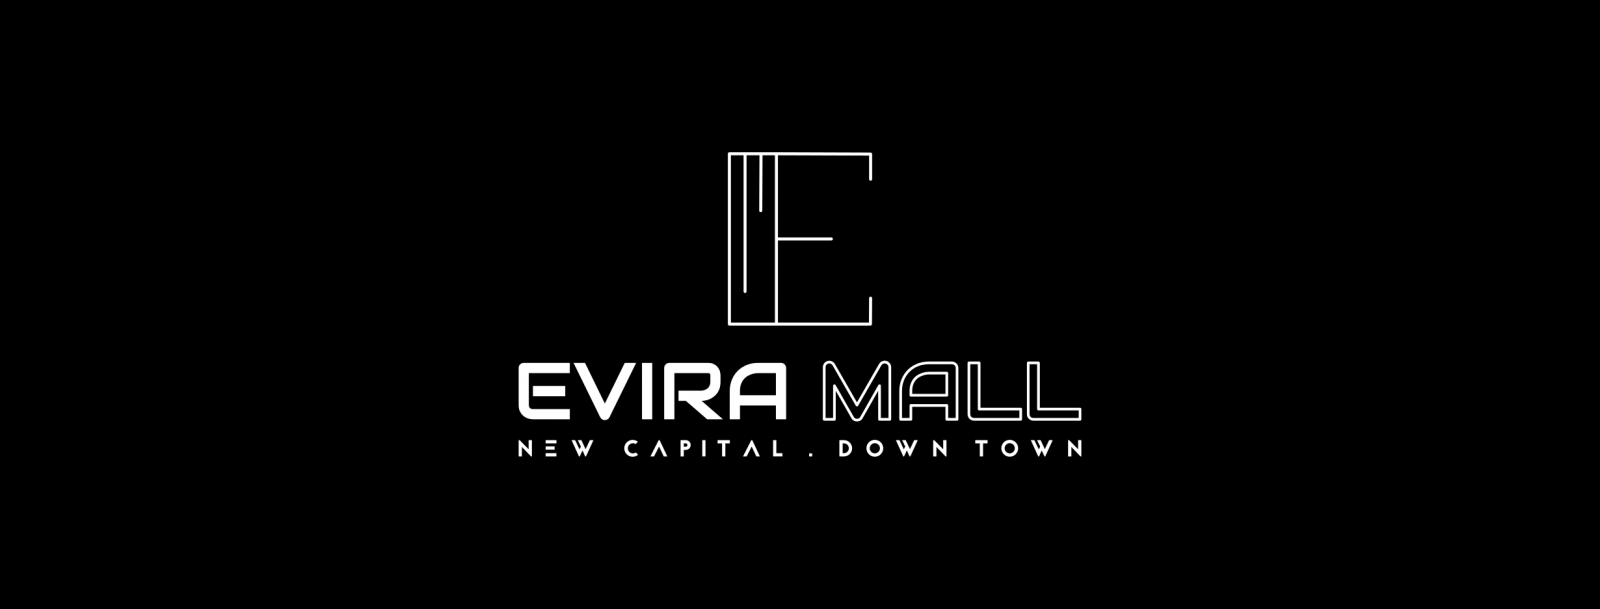 ايفيرا مول العاصمة الادارية الجديدة فورسيزون جروب – Evira New Capital Mall